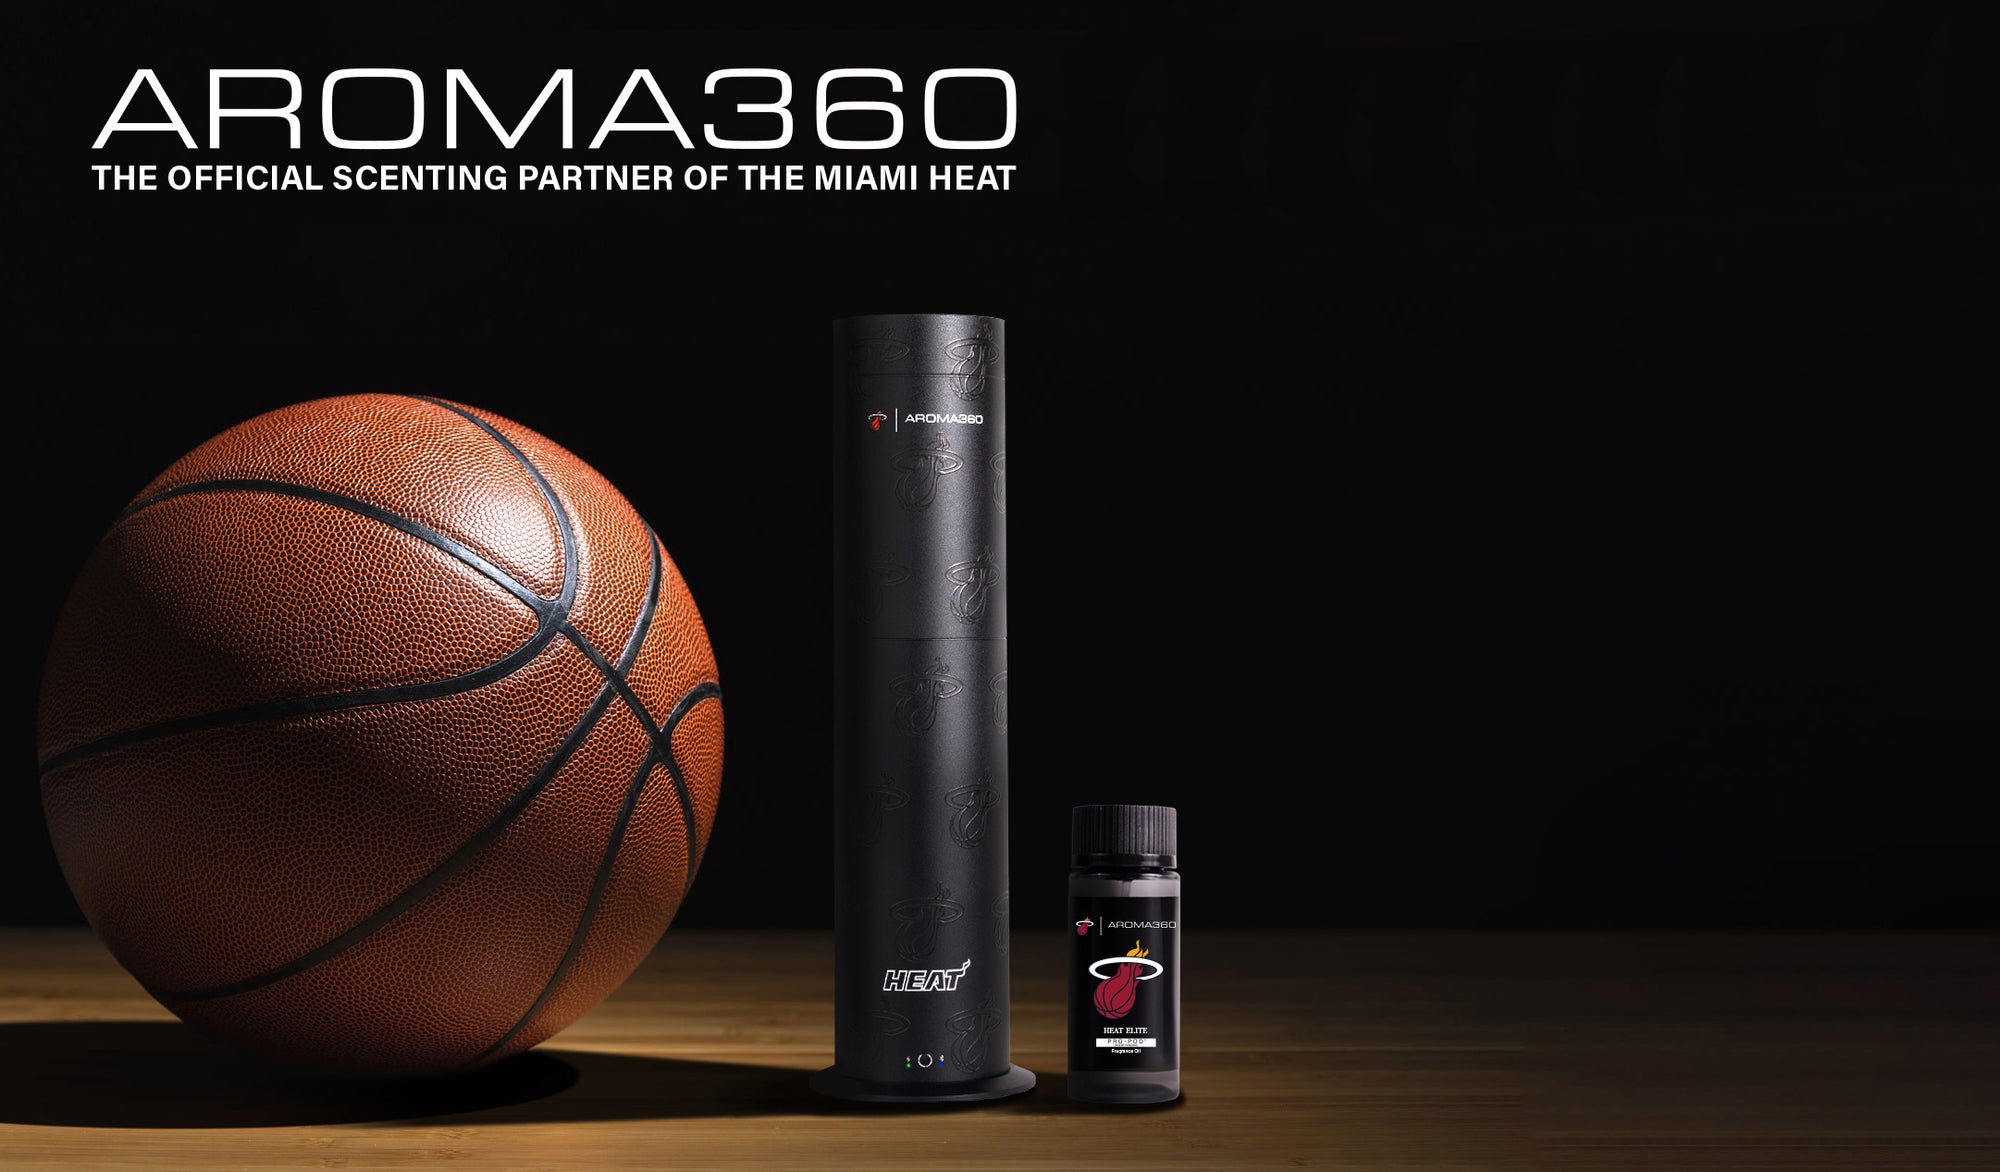 Aroma360 boduje s Miami Heat Partnership